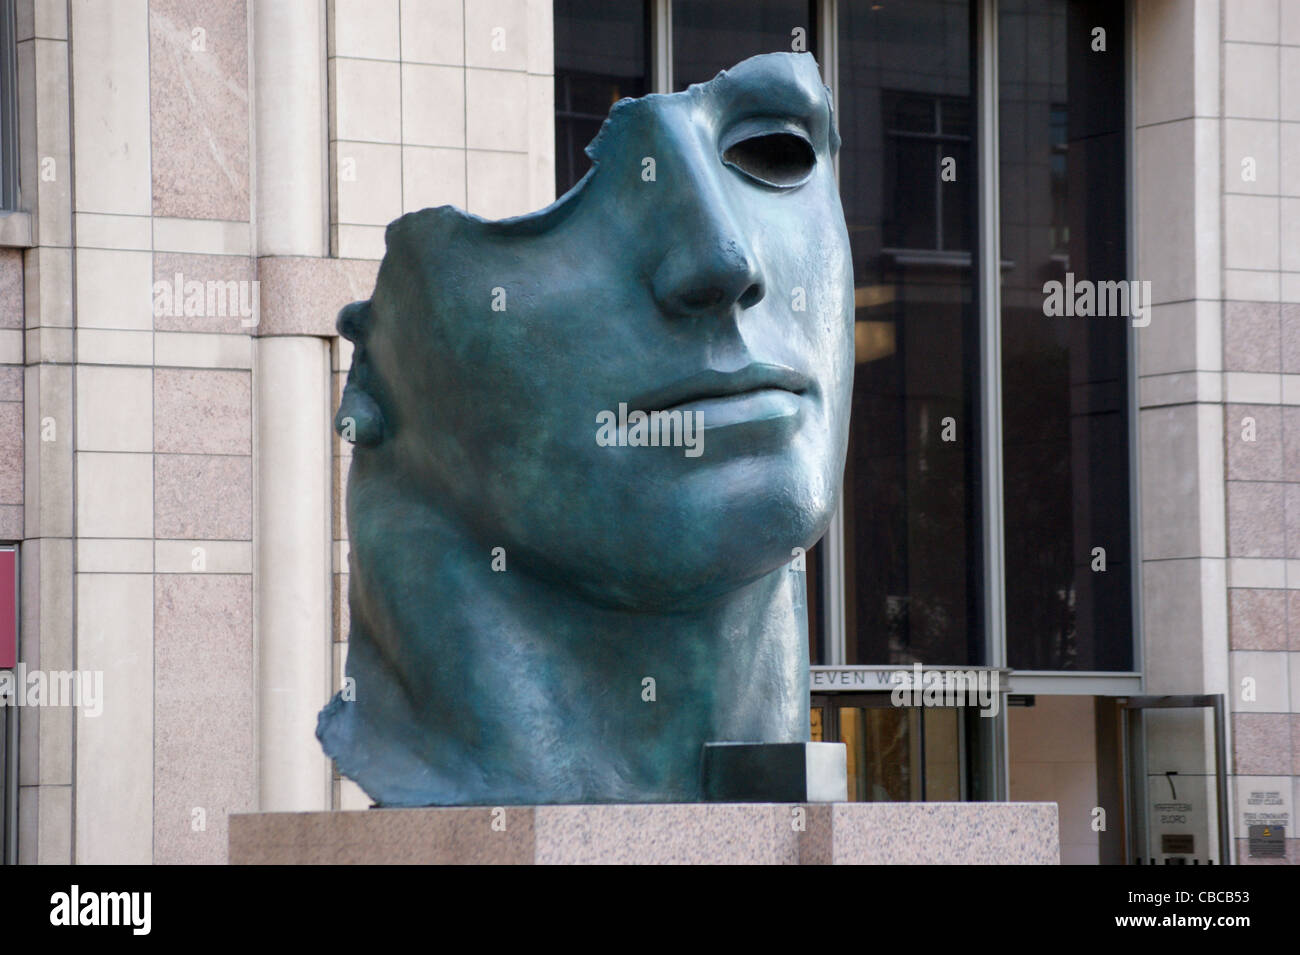 Igor Mitoraj sculpture 'Centurione', Canary Wharf, Docklands, London, England Stock Photo